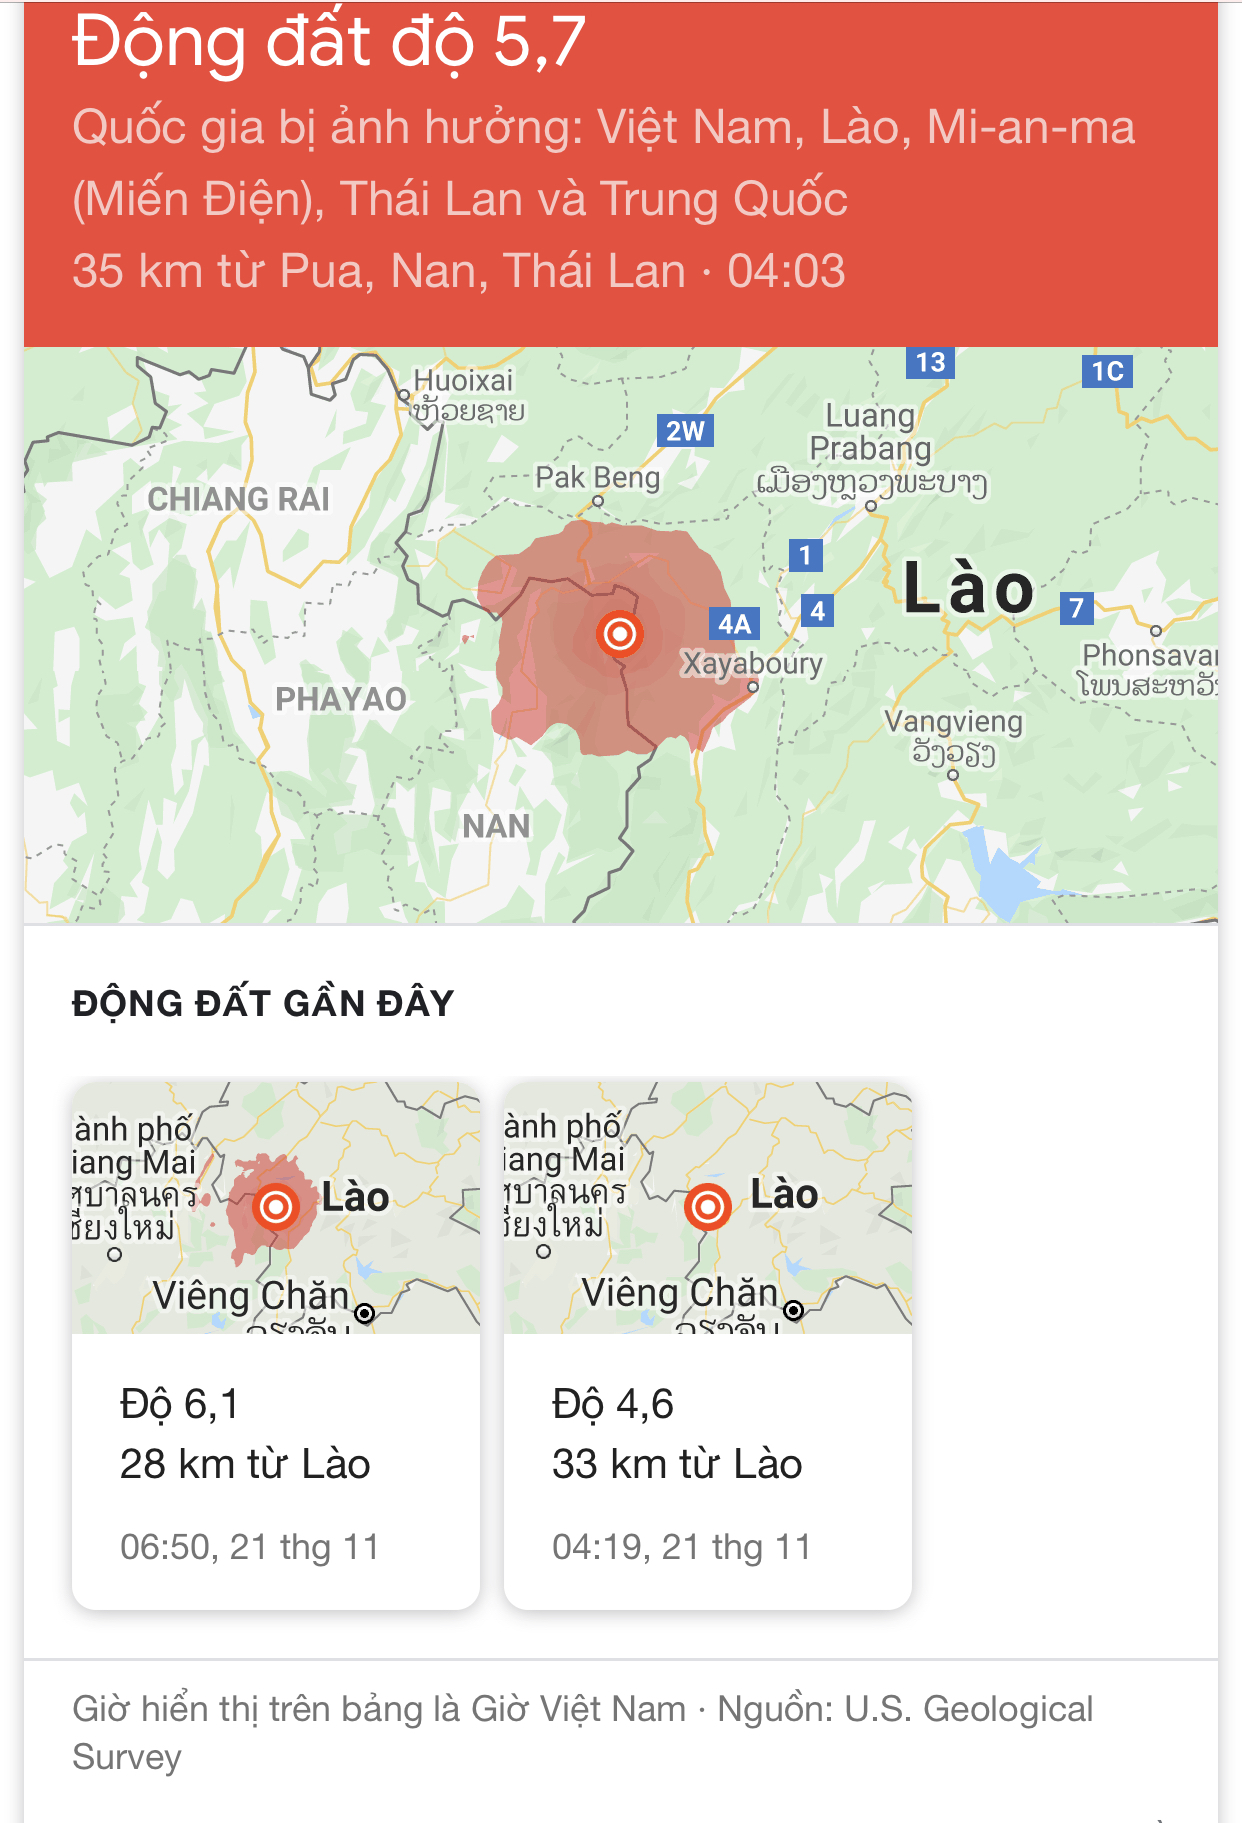 Động đất Hà Nội